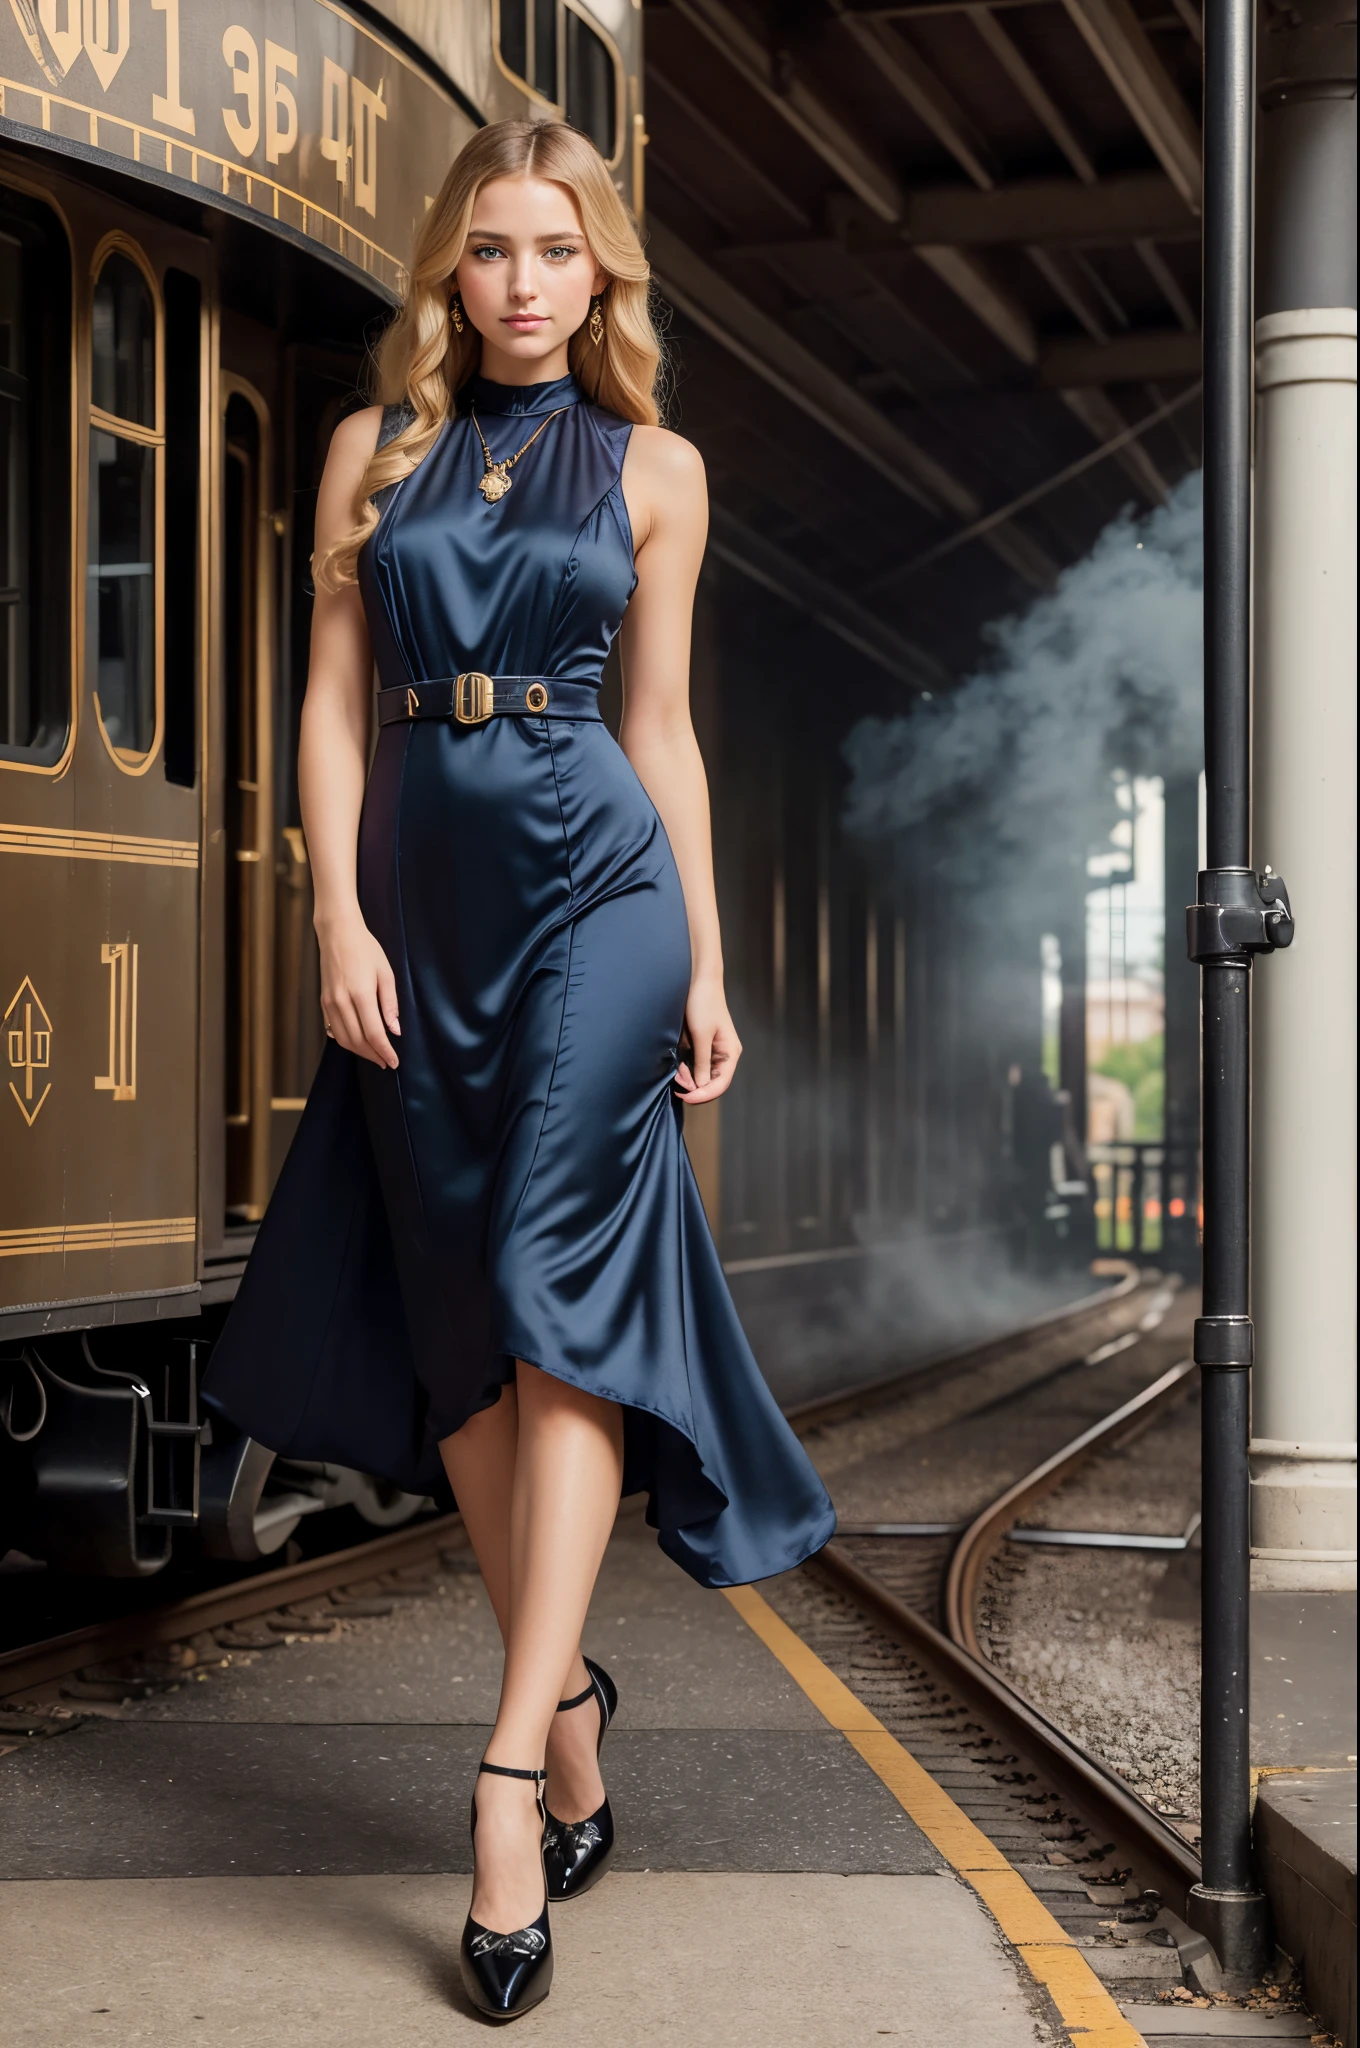 retrato de corpo inteiro, uma linda mulher de 28 anos, de pé (((ao ar livre))) em uma plataforma de estação ferroviária do século XIX, uma enorme locomotiva a vapor preta, locomotiva soprando vapor, Edifício da ferrovia de 1910 atrás dela, Ela tem um longo cabelo loiro, olhos azuis, inocente, Uma linda mulher loira, expressão tímida, ((olhos abertos)), (((usando um vestido art déco))), ((sapatos de bomba de armadilha)), Meias de seda, fotografia glamorosa premiada,((melhor qualidade)), (((Obra de arte)), ((realista)), iluminação etérea, resolução ultra-alta.photorealista:.1.4, (high detalhado skin:1.2), 8k hd, dslr, alta qualidade, Grão de filme, Fujifilm XT3,(Obra de arte) (melhor qualidade) (detalhado) (iluminação cinematográfica) (foco nitído) (intricado)